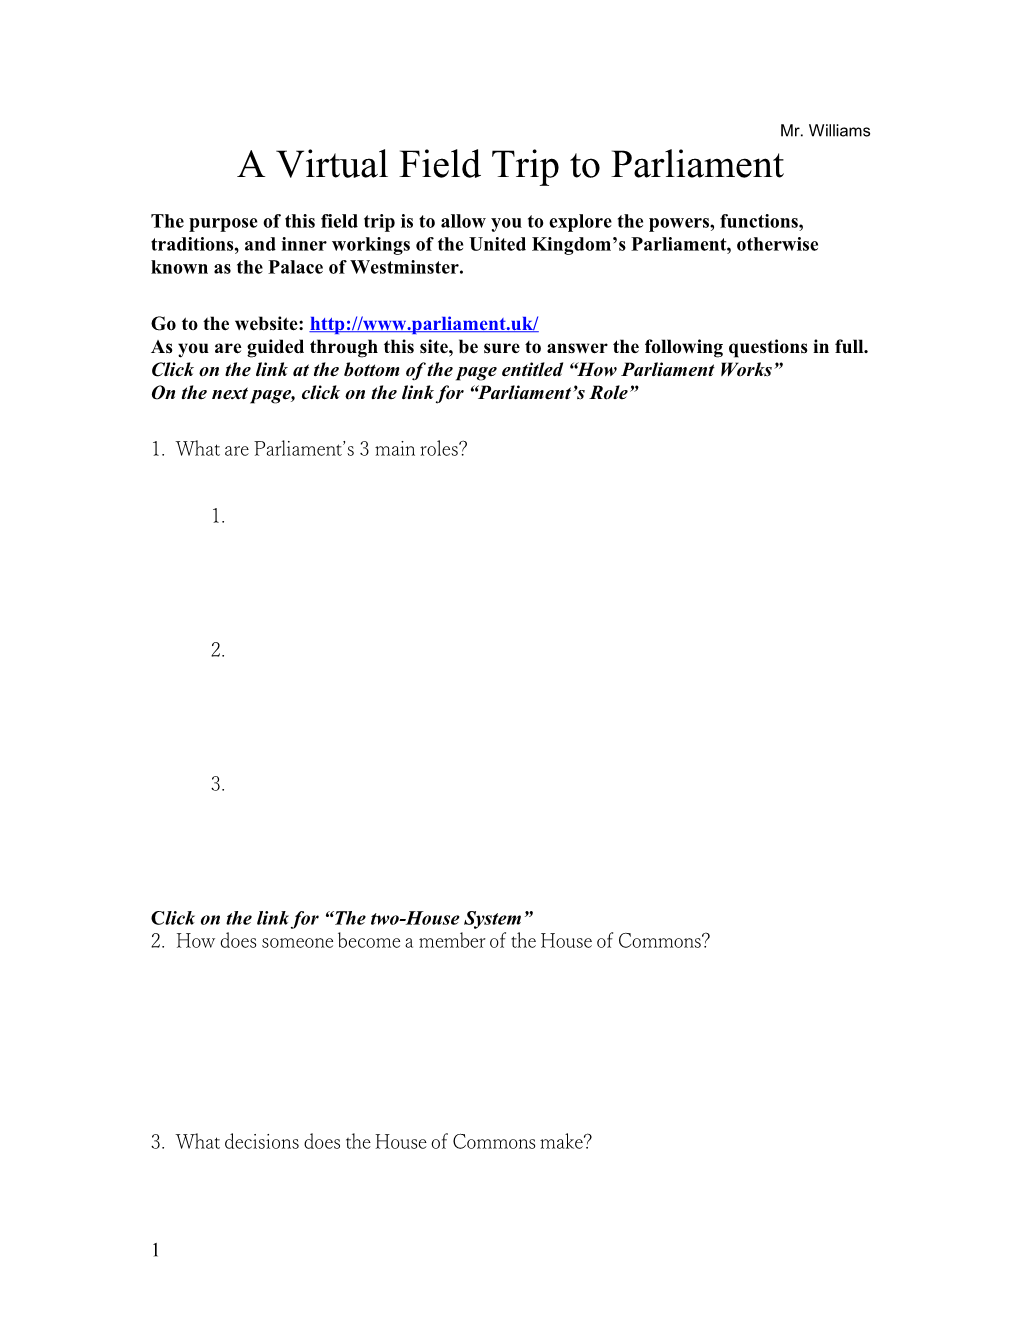 Parliament Virtual Field Trip